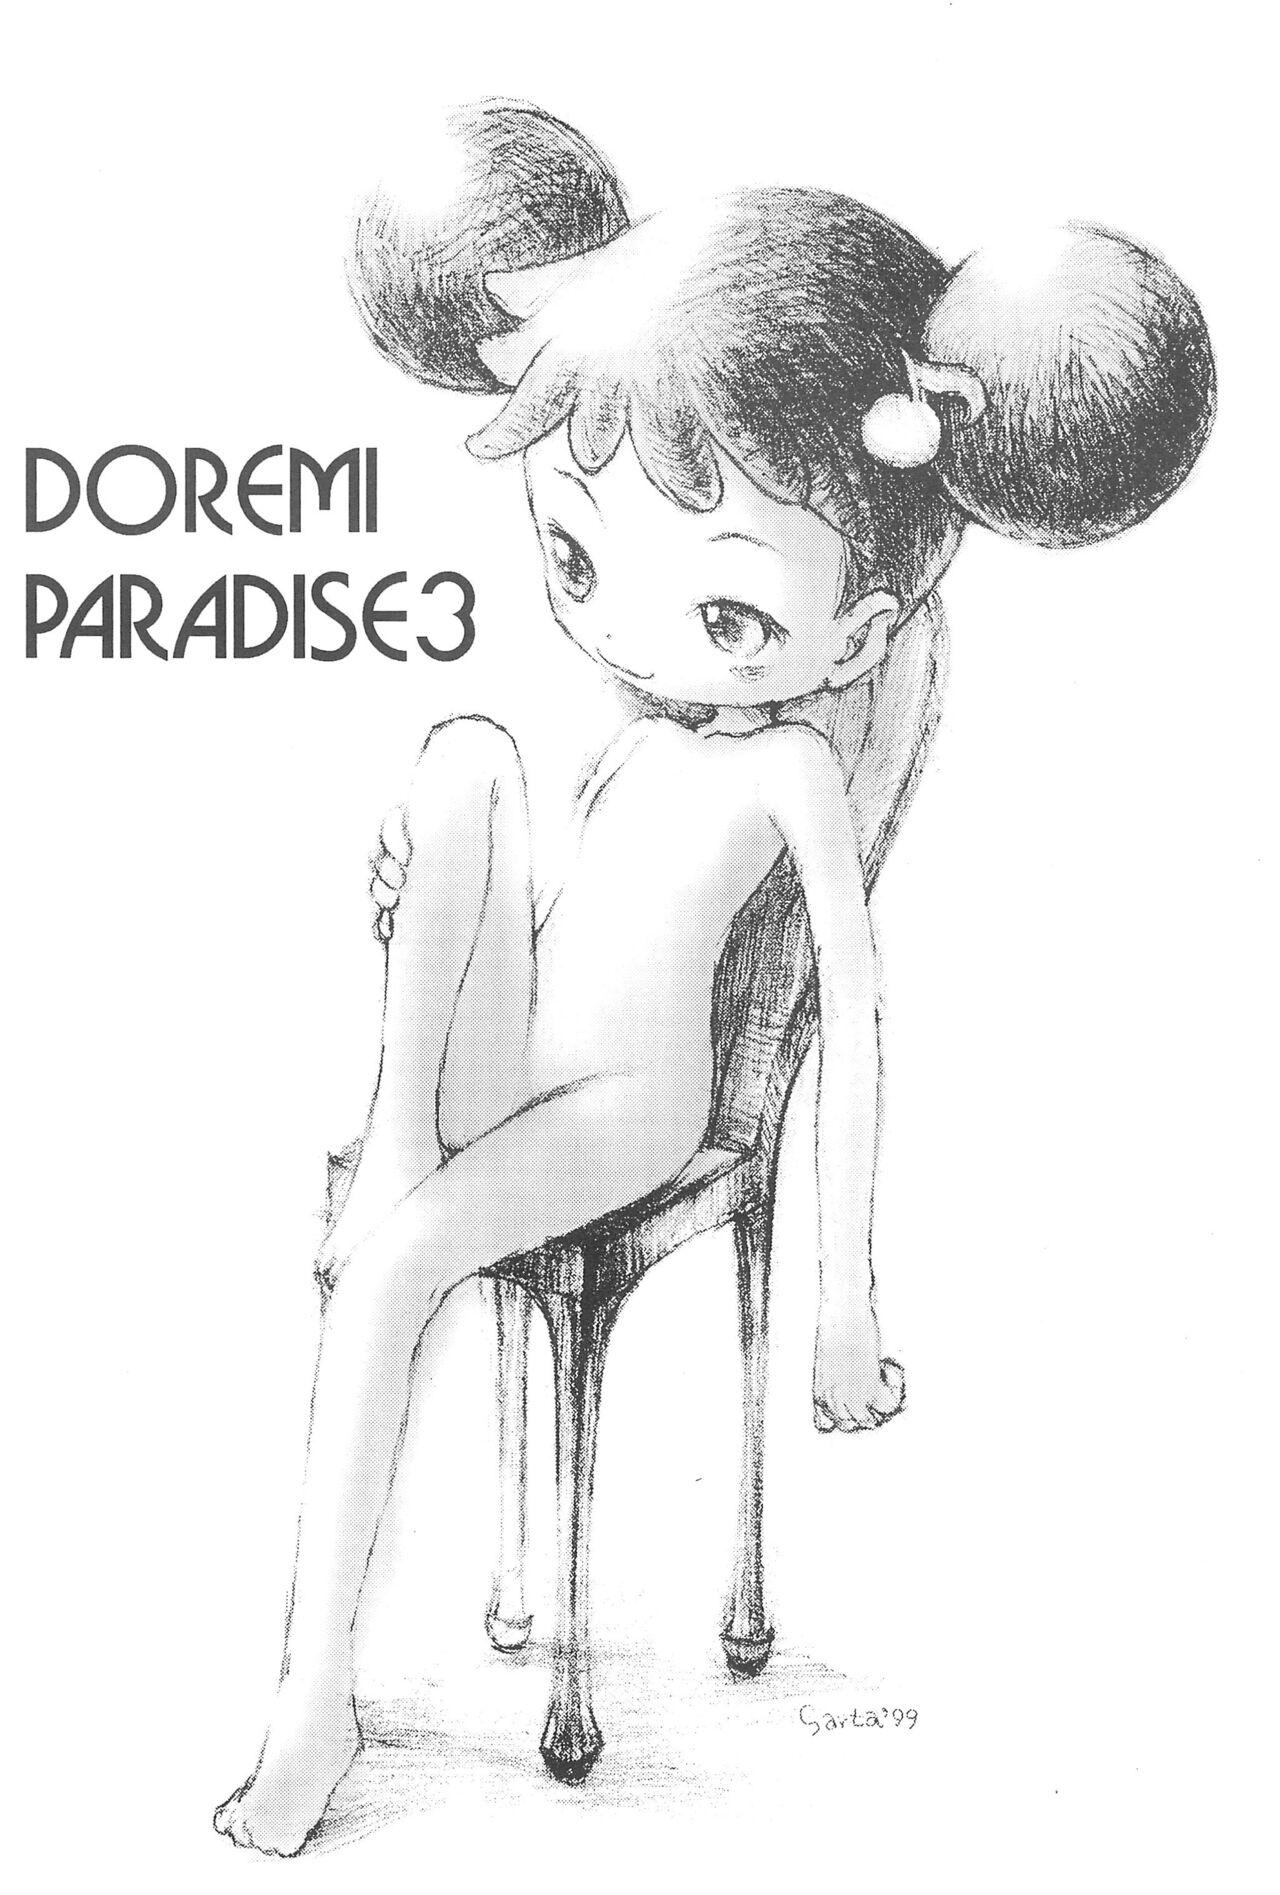 Hard Core Porn Doremi Paradise 3 - Ojamajo doremi | magical doremi Boyfriend - Picture 3